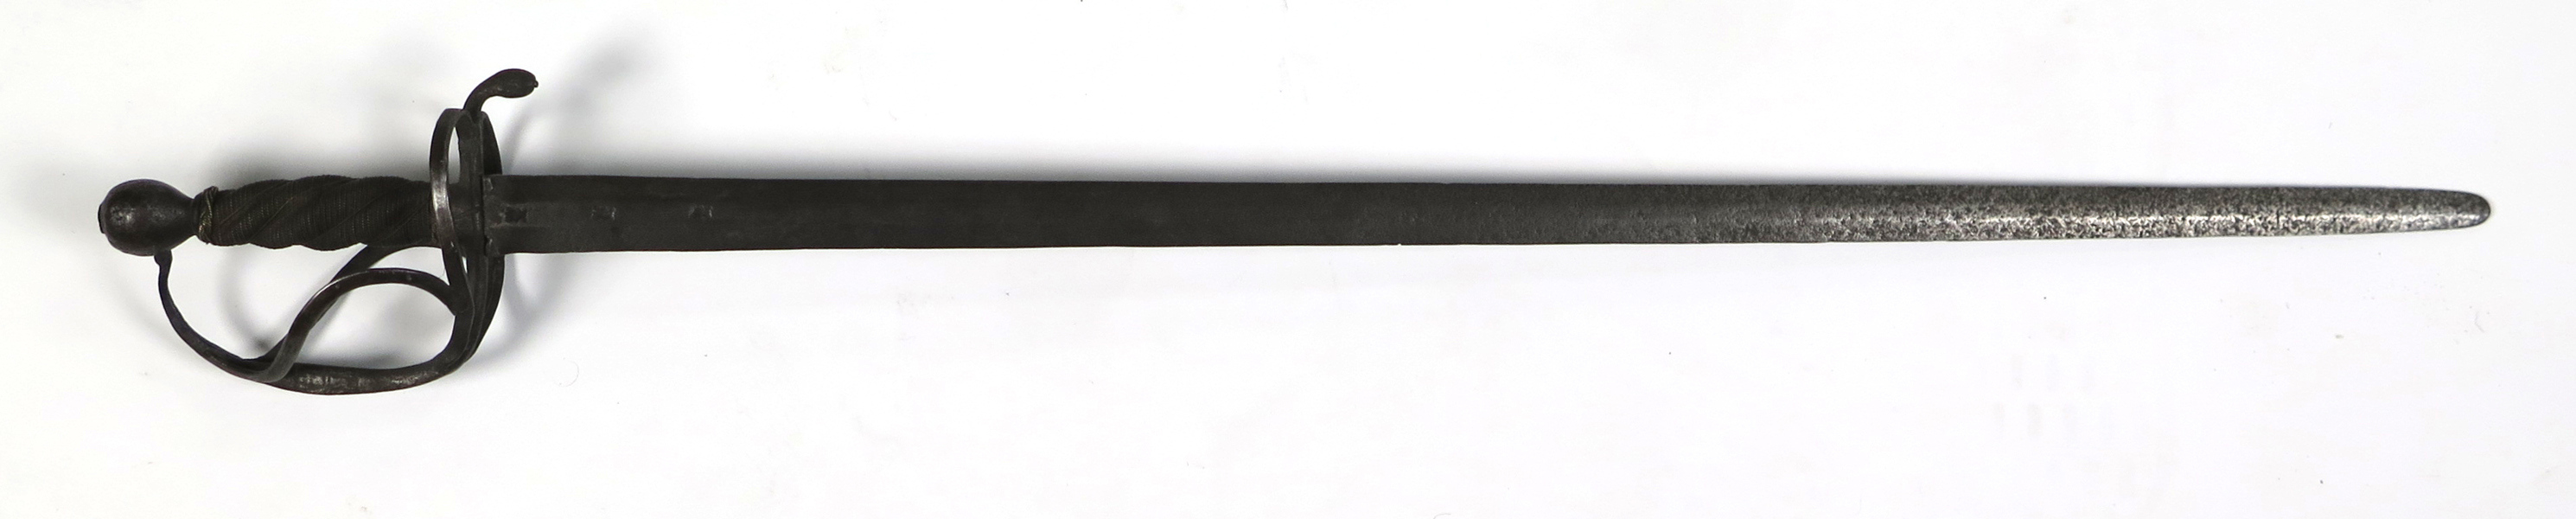 Värja, stål, modell liknande så kallat Soldatsvärd M/1653 men av samansatta delar, tveeggad klinga med stämplar från Wira Bruk, hjärtformade parerstänger med tumgrepp, stållindad kavel, _33677a_lg.jpeg